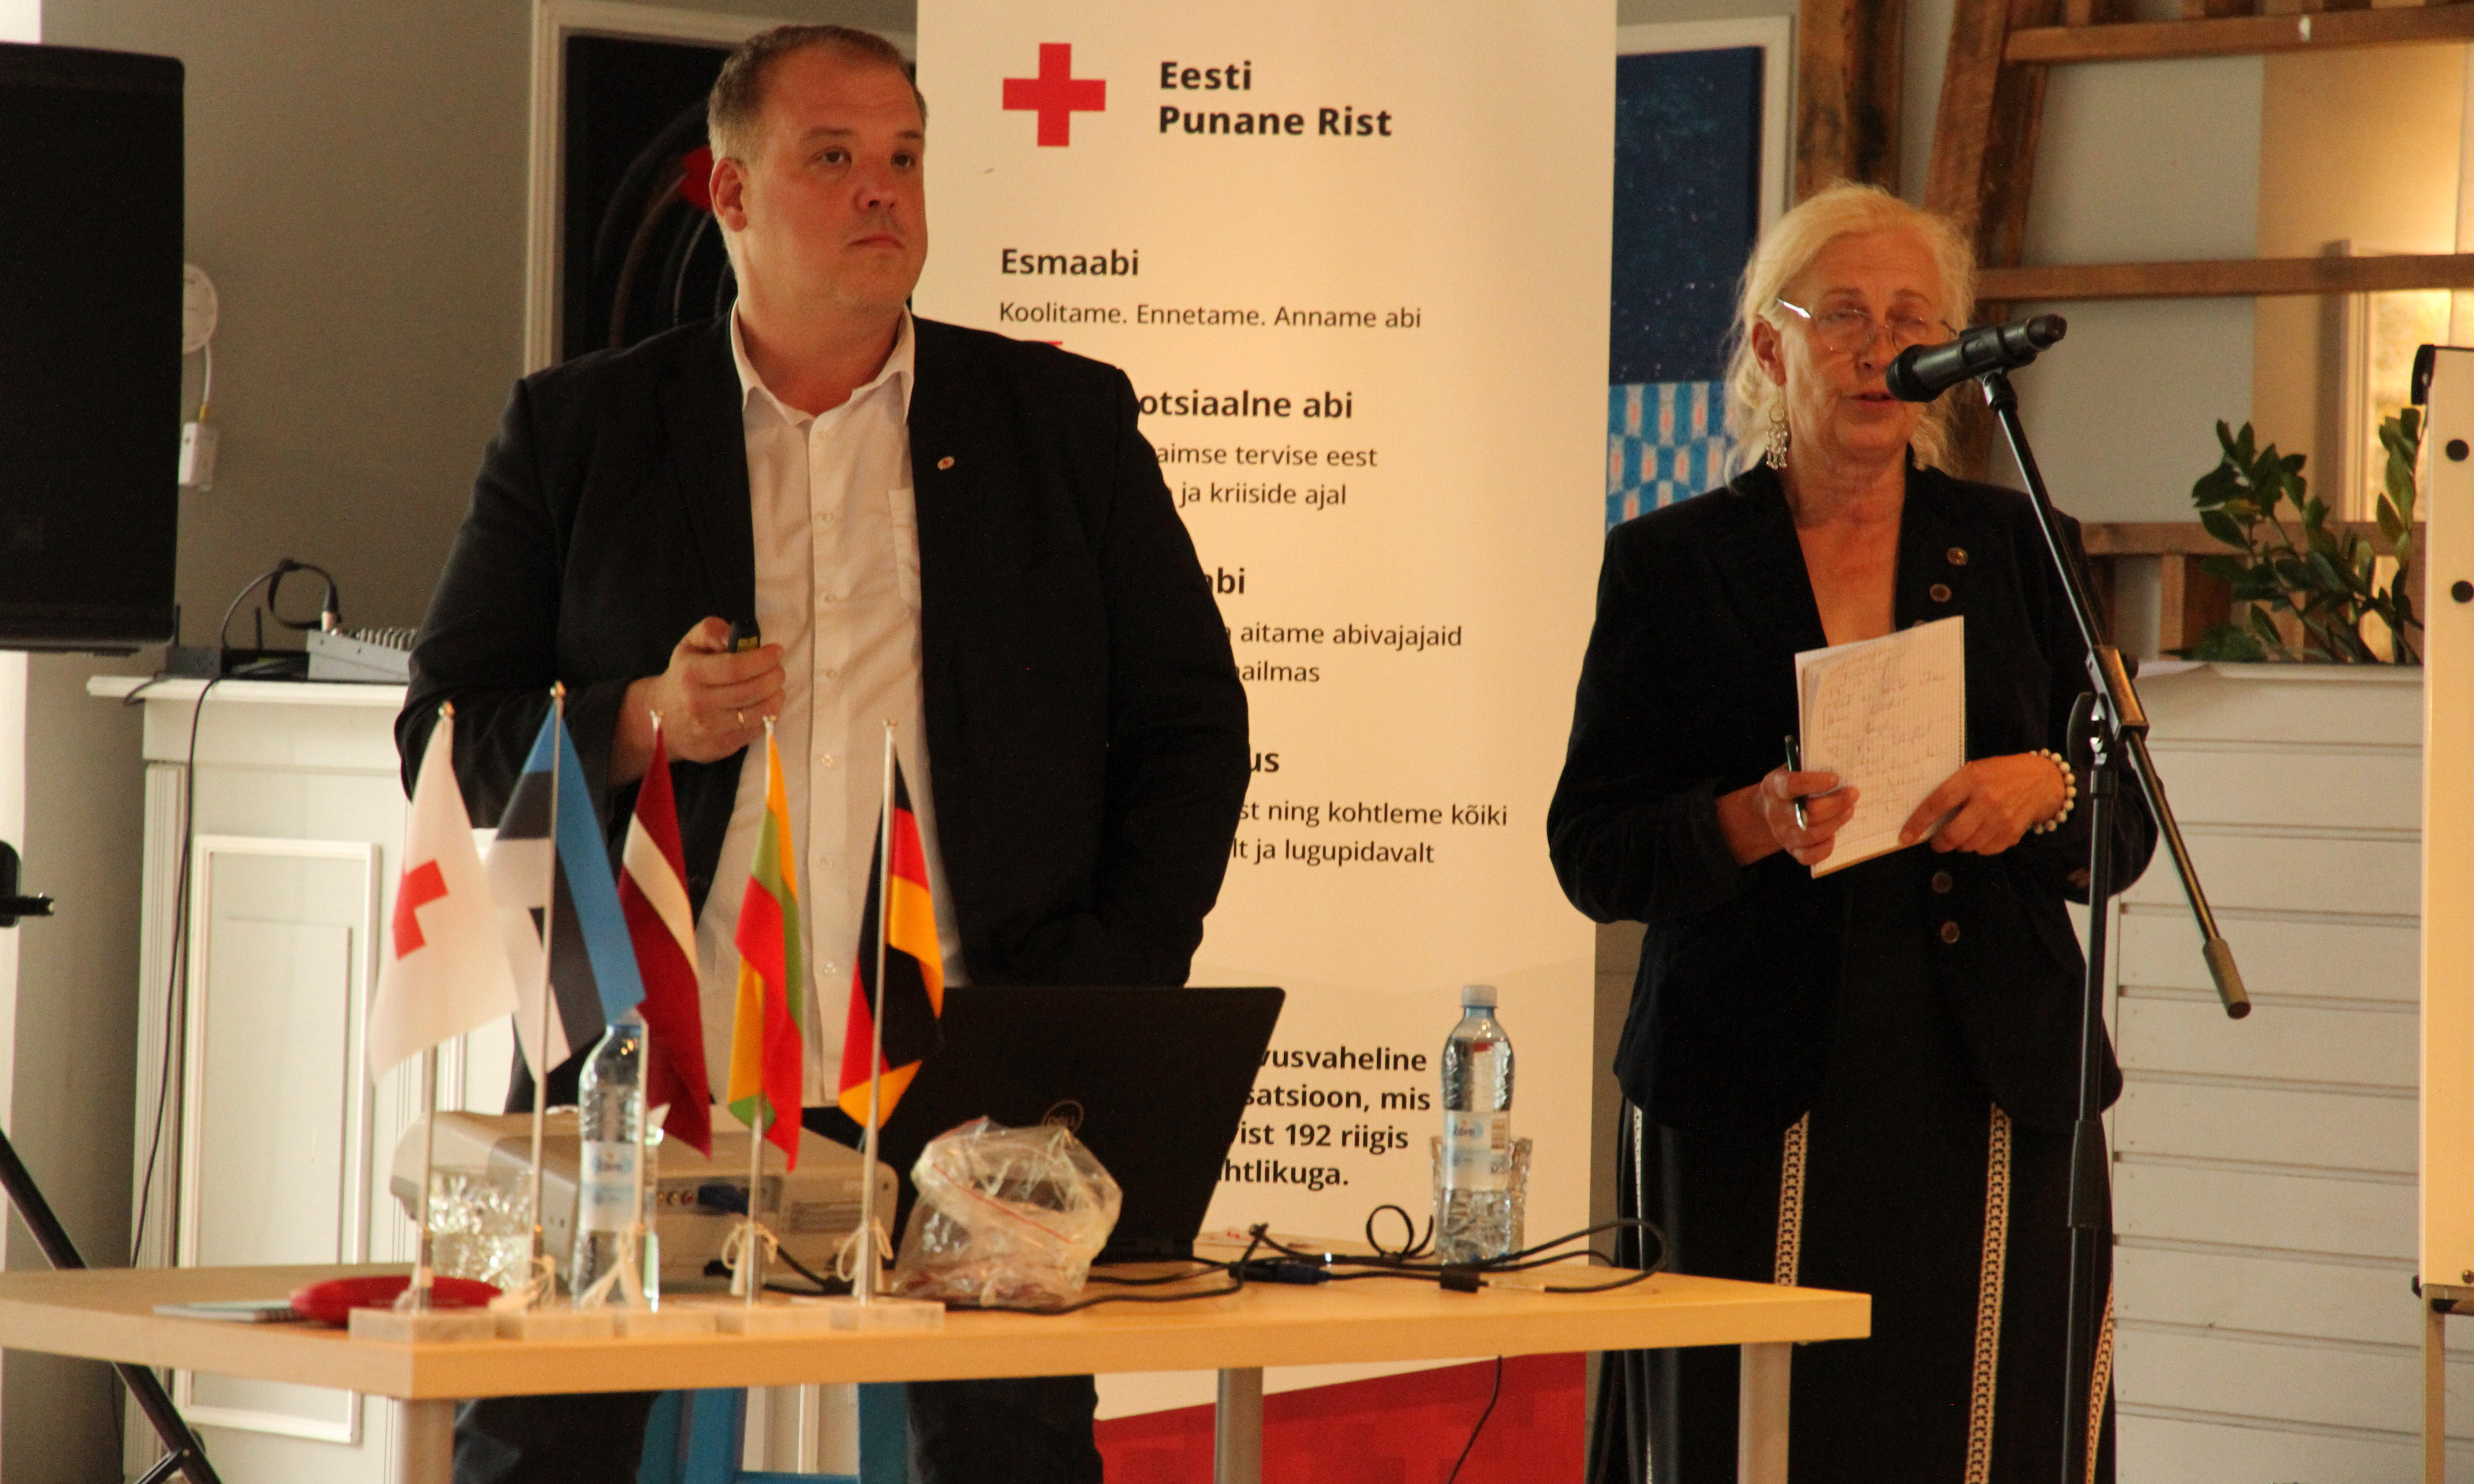 Zwei Personen sprechen in Mikrofon. Im Hintergrund ein banner mit rotem Kreuz